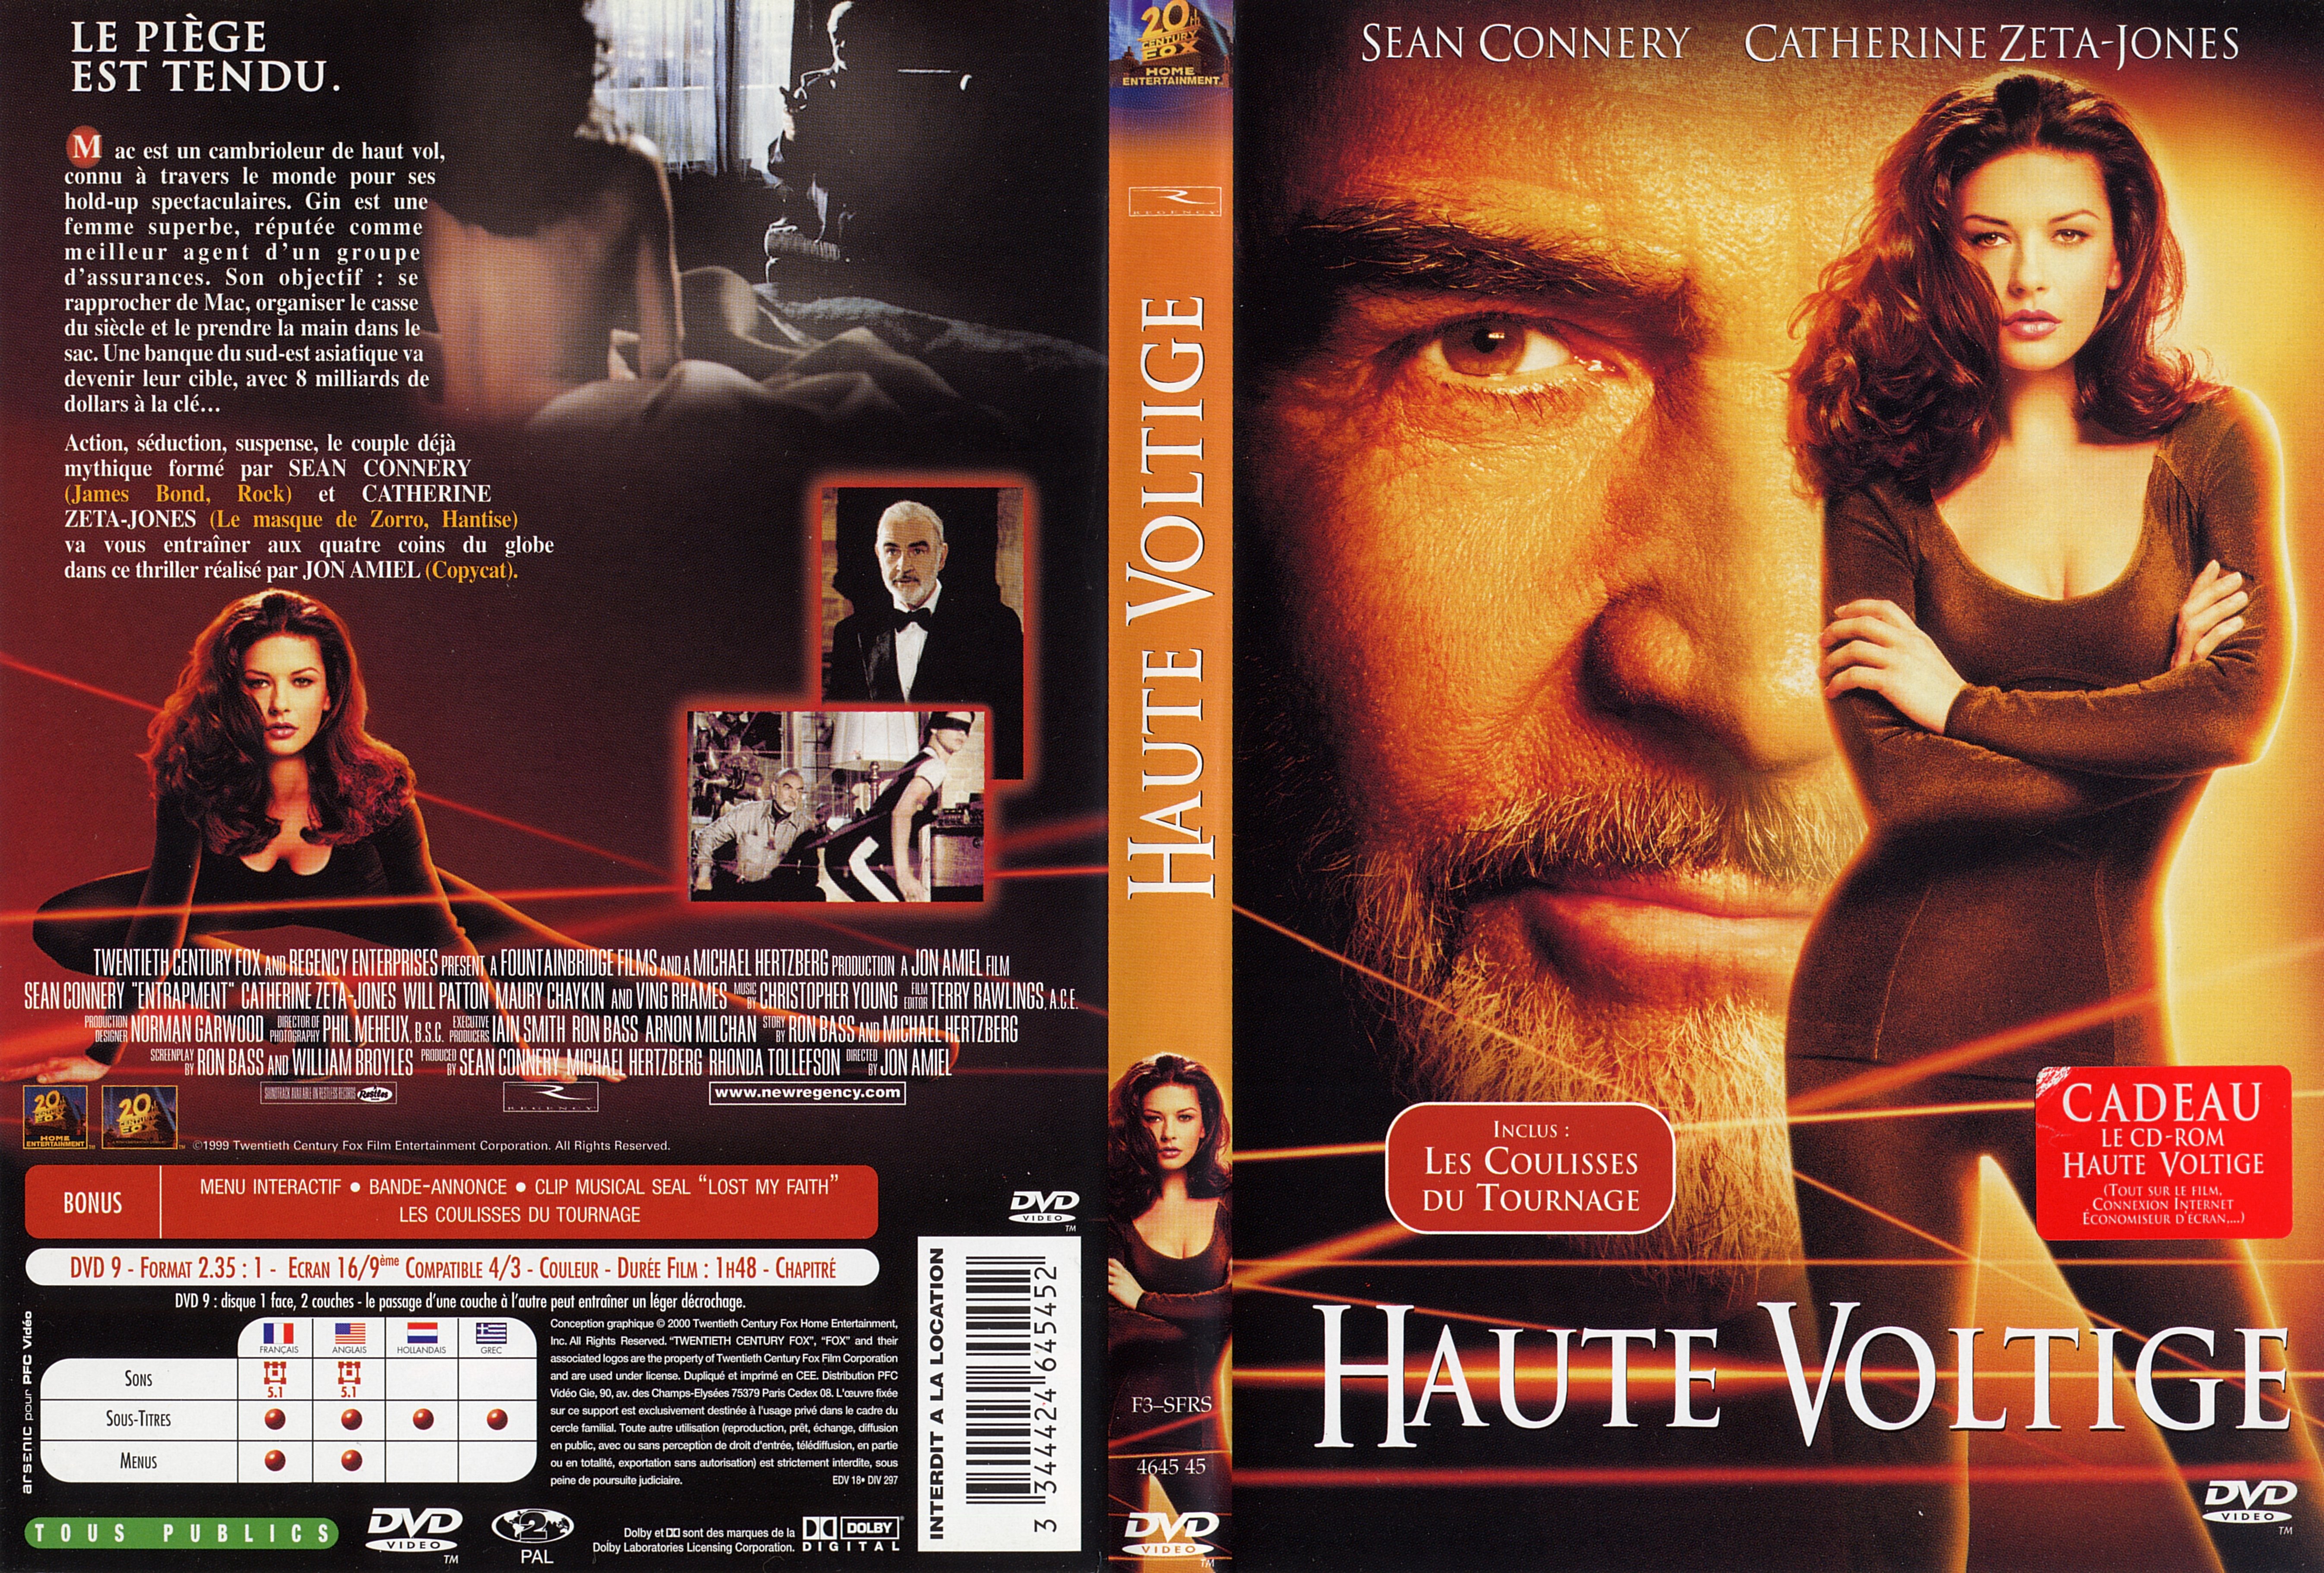 Jaquette DVD Haute voltige